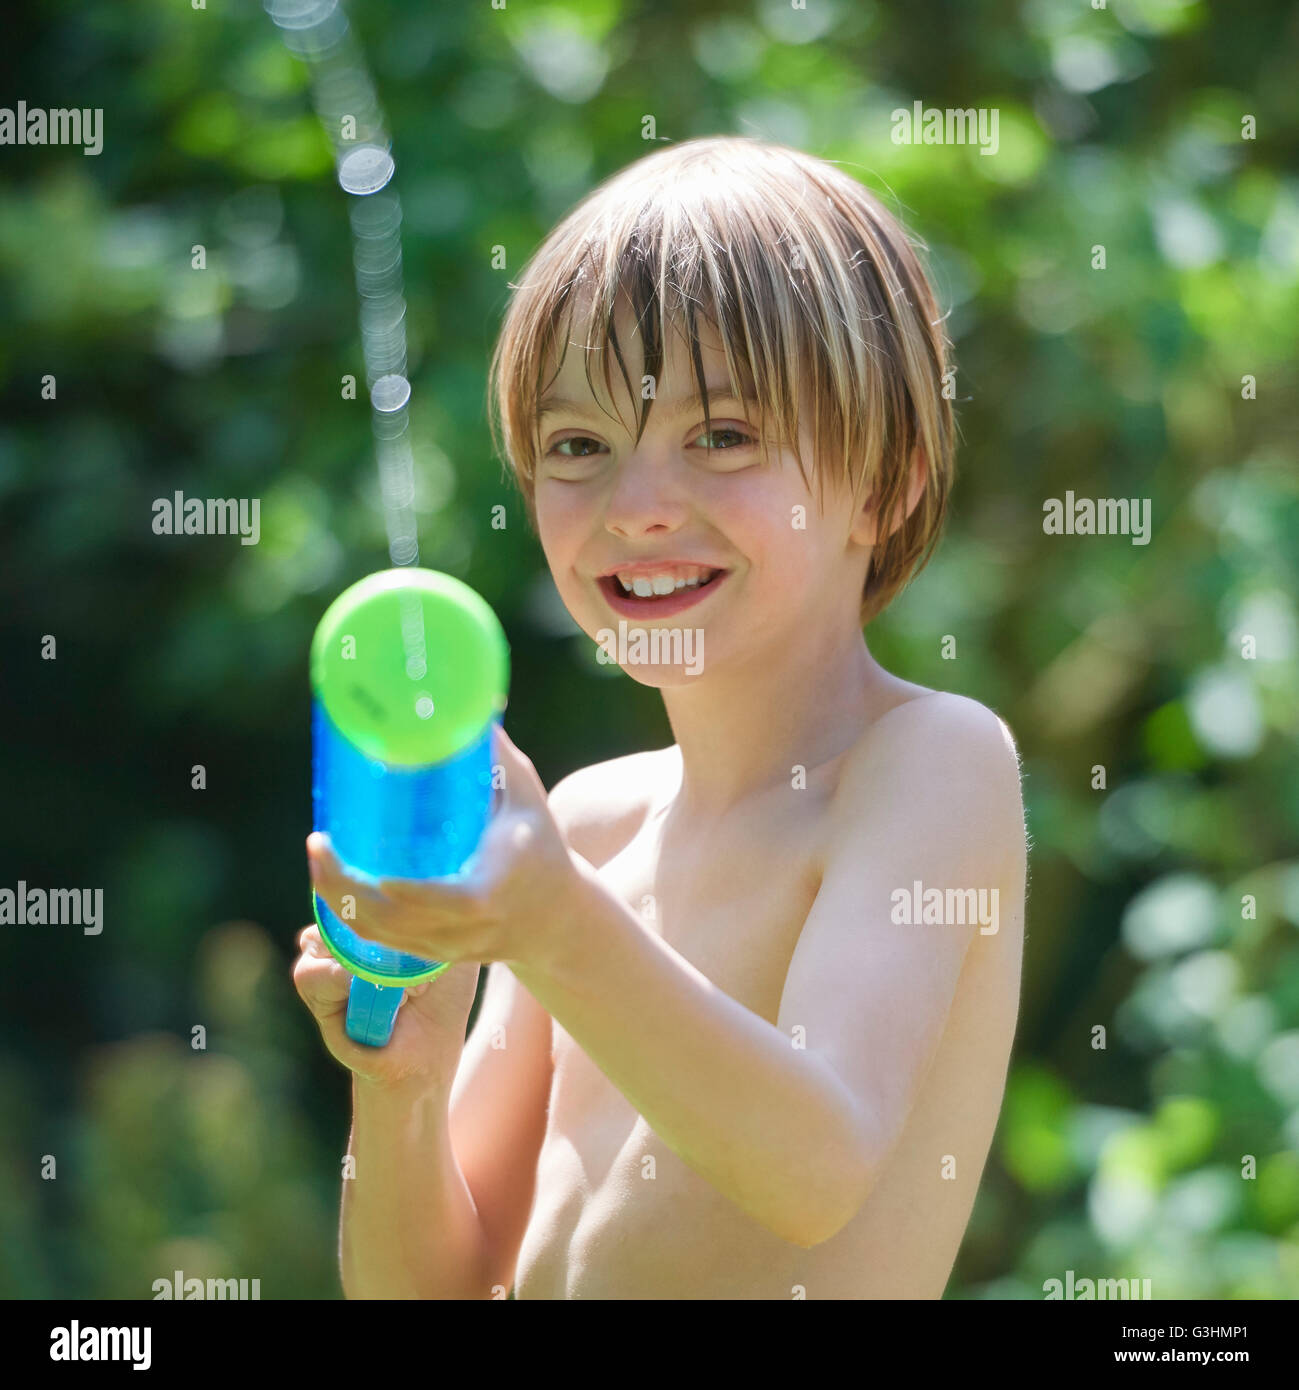 Portrait of boy squirting water gun in garden Stock Photo